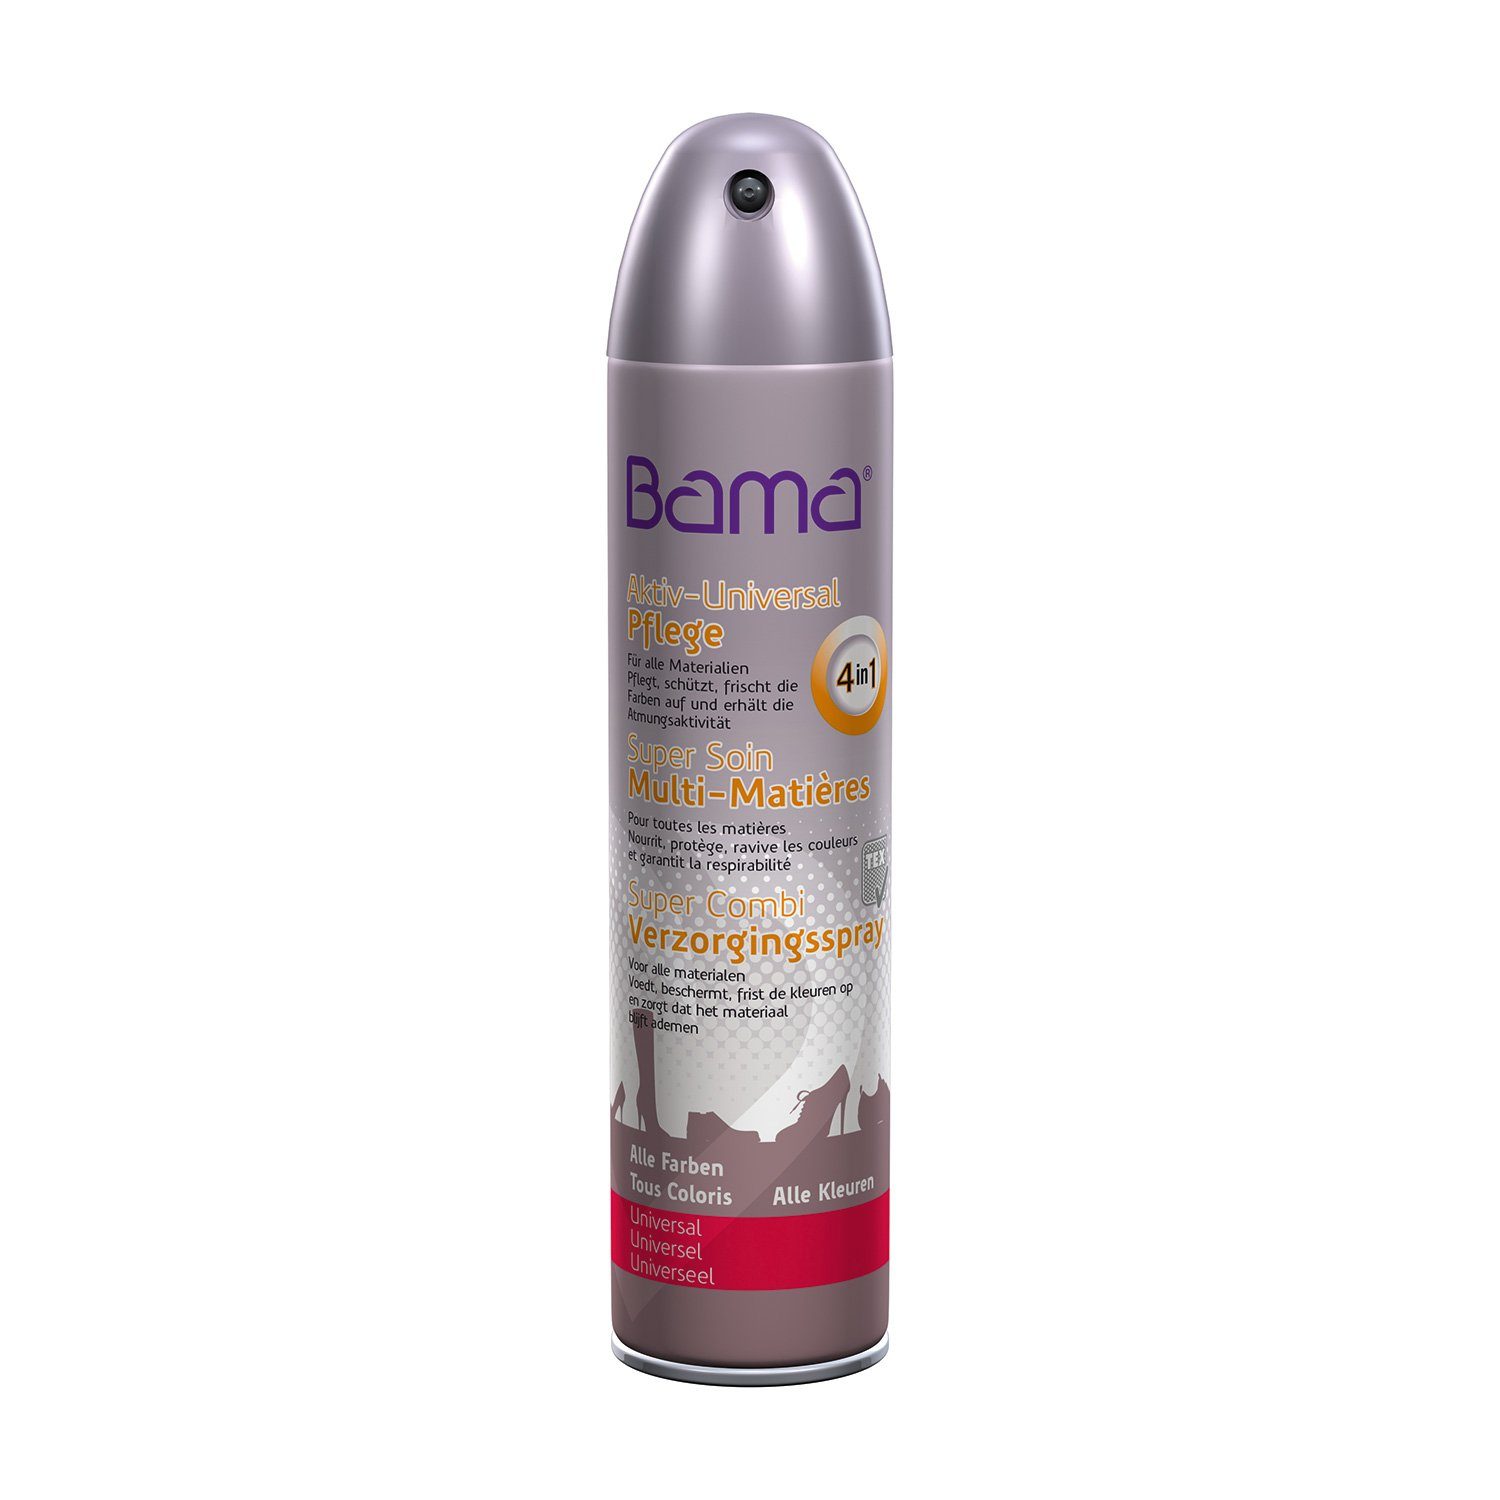 Bama Aktiv-Universal Group Schuhcreme 300ml Farbe BAMA die Pflegt,Schützt,frischt auf Pflege